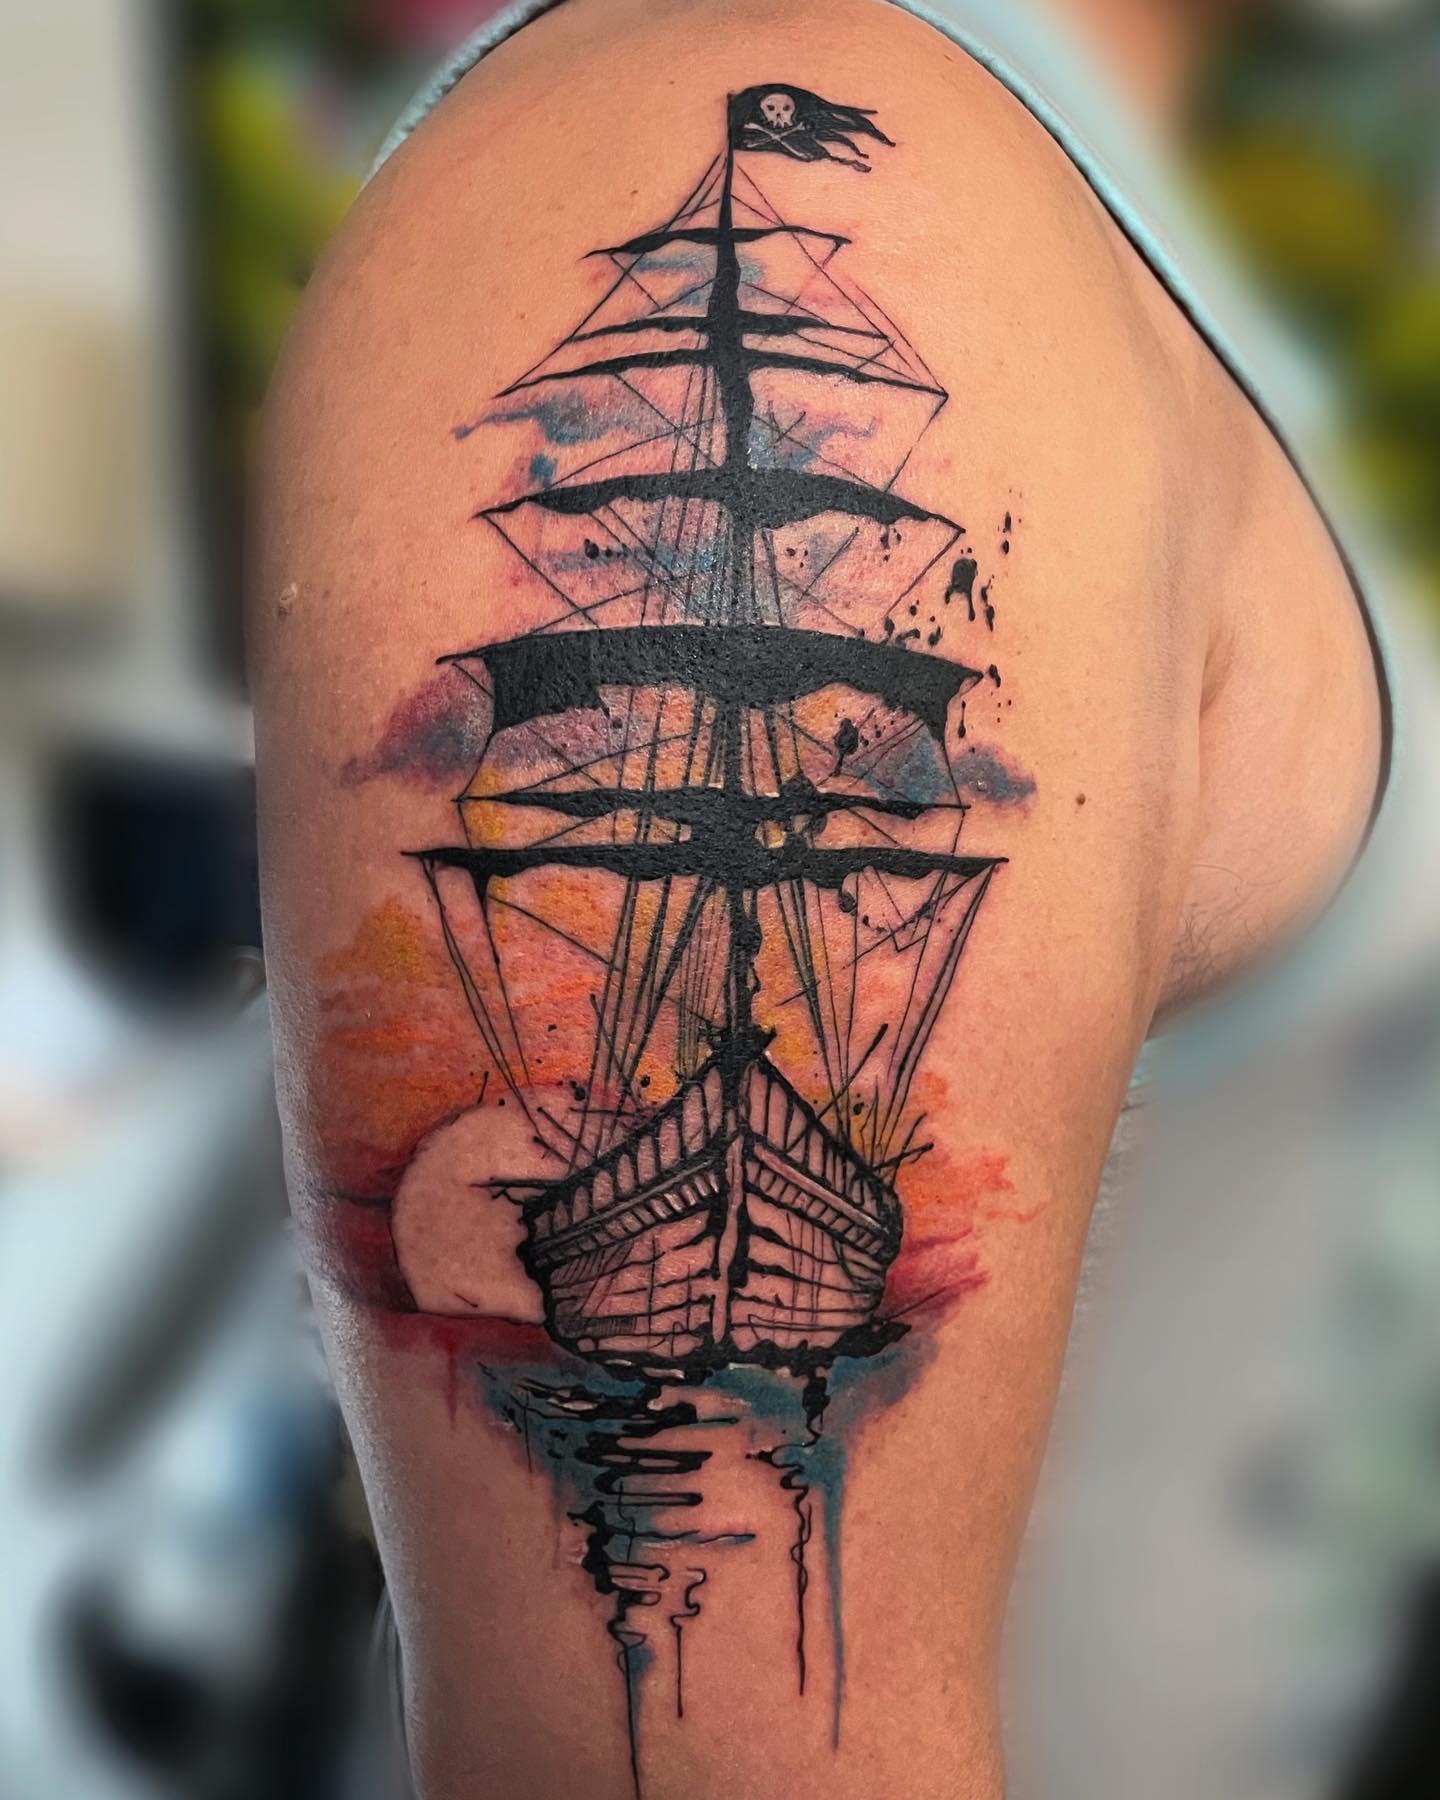 Tatuaż statku pirackiego